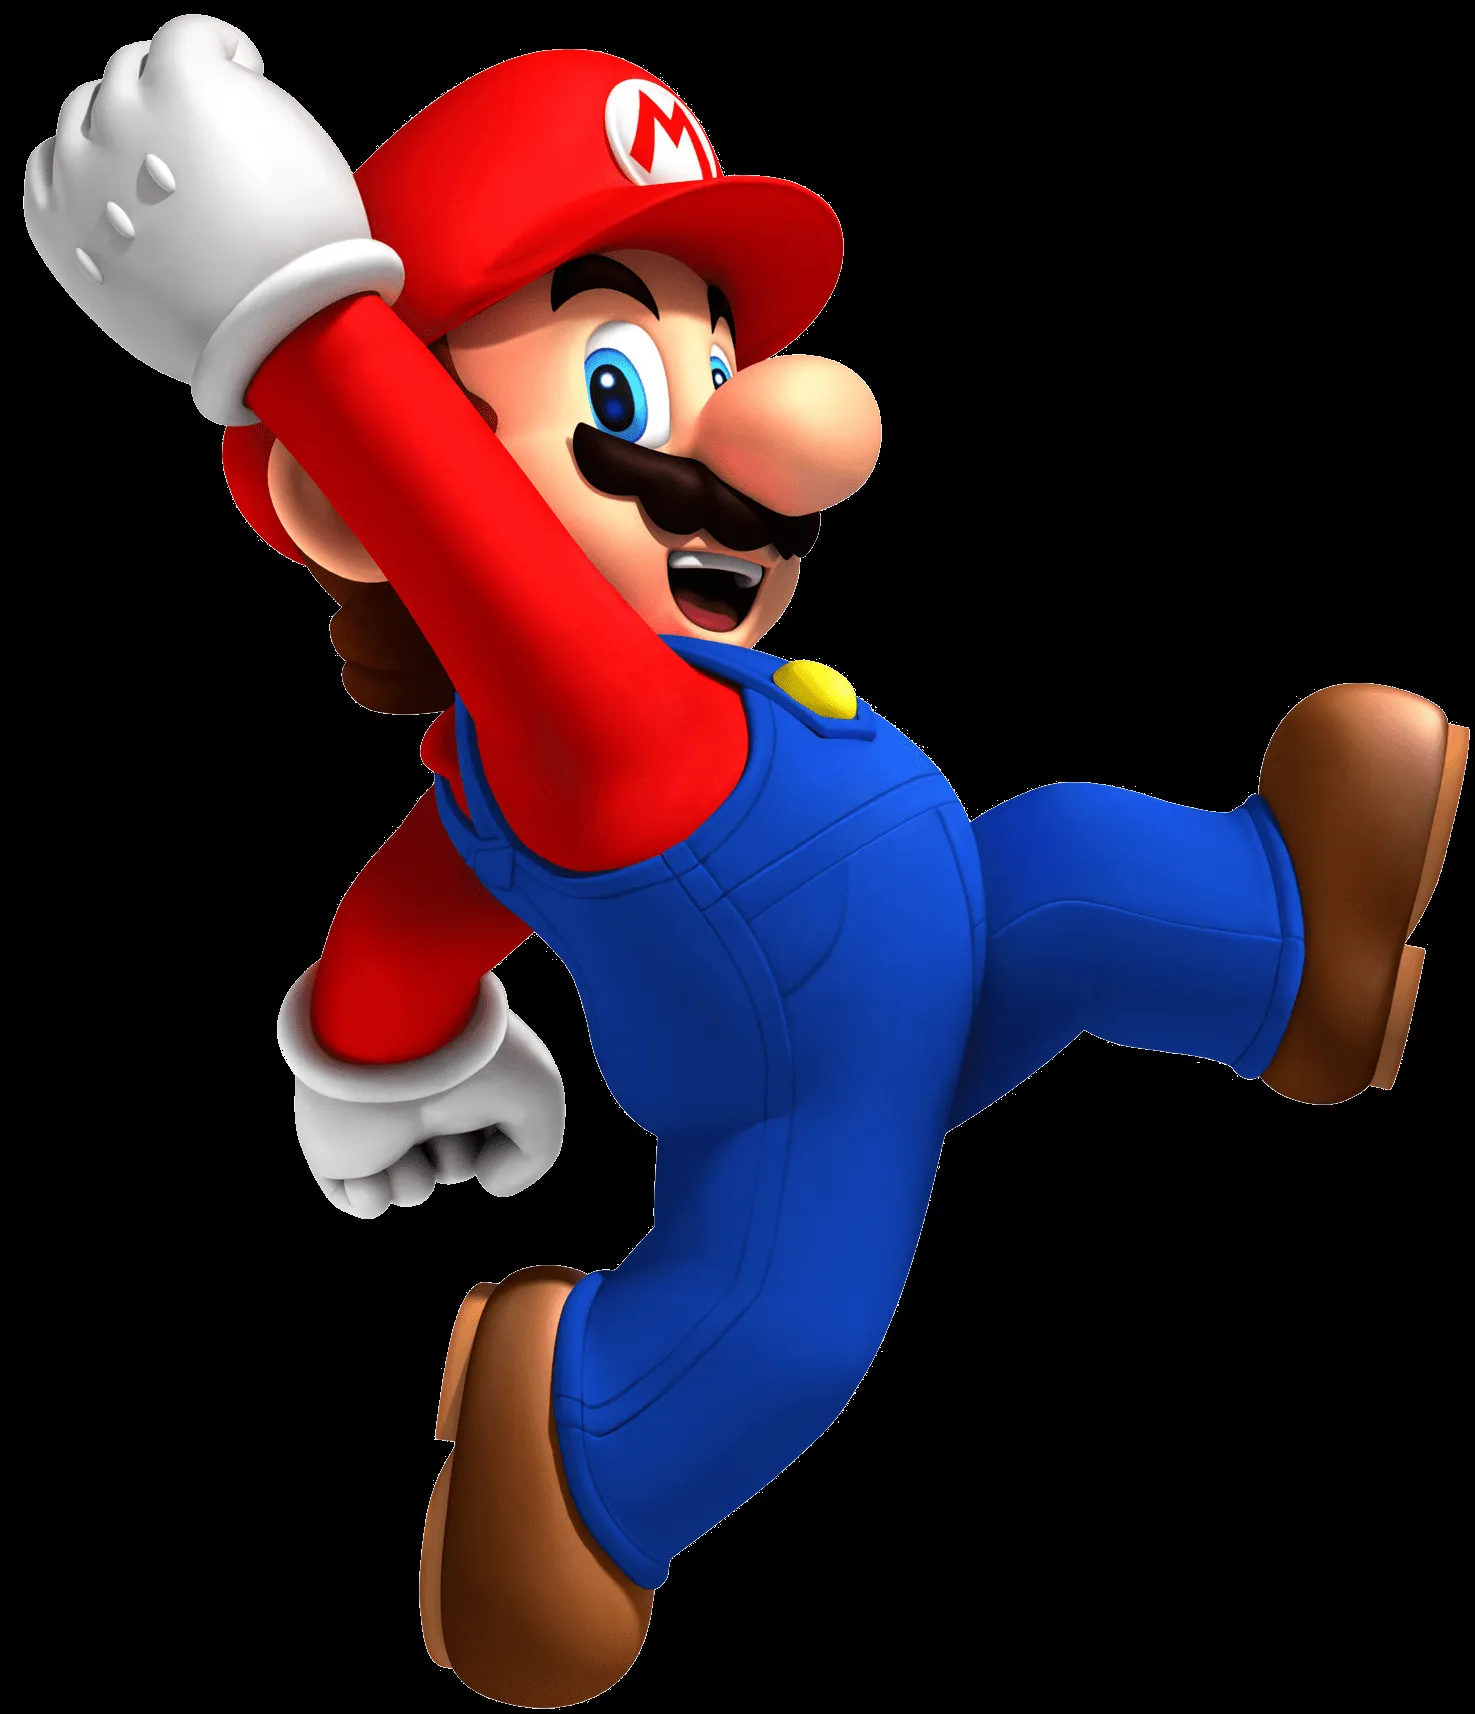 Impresiones de 'Mario Maker' y gameplay